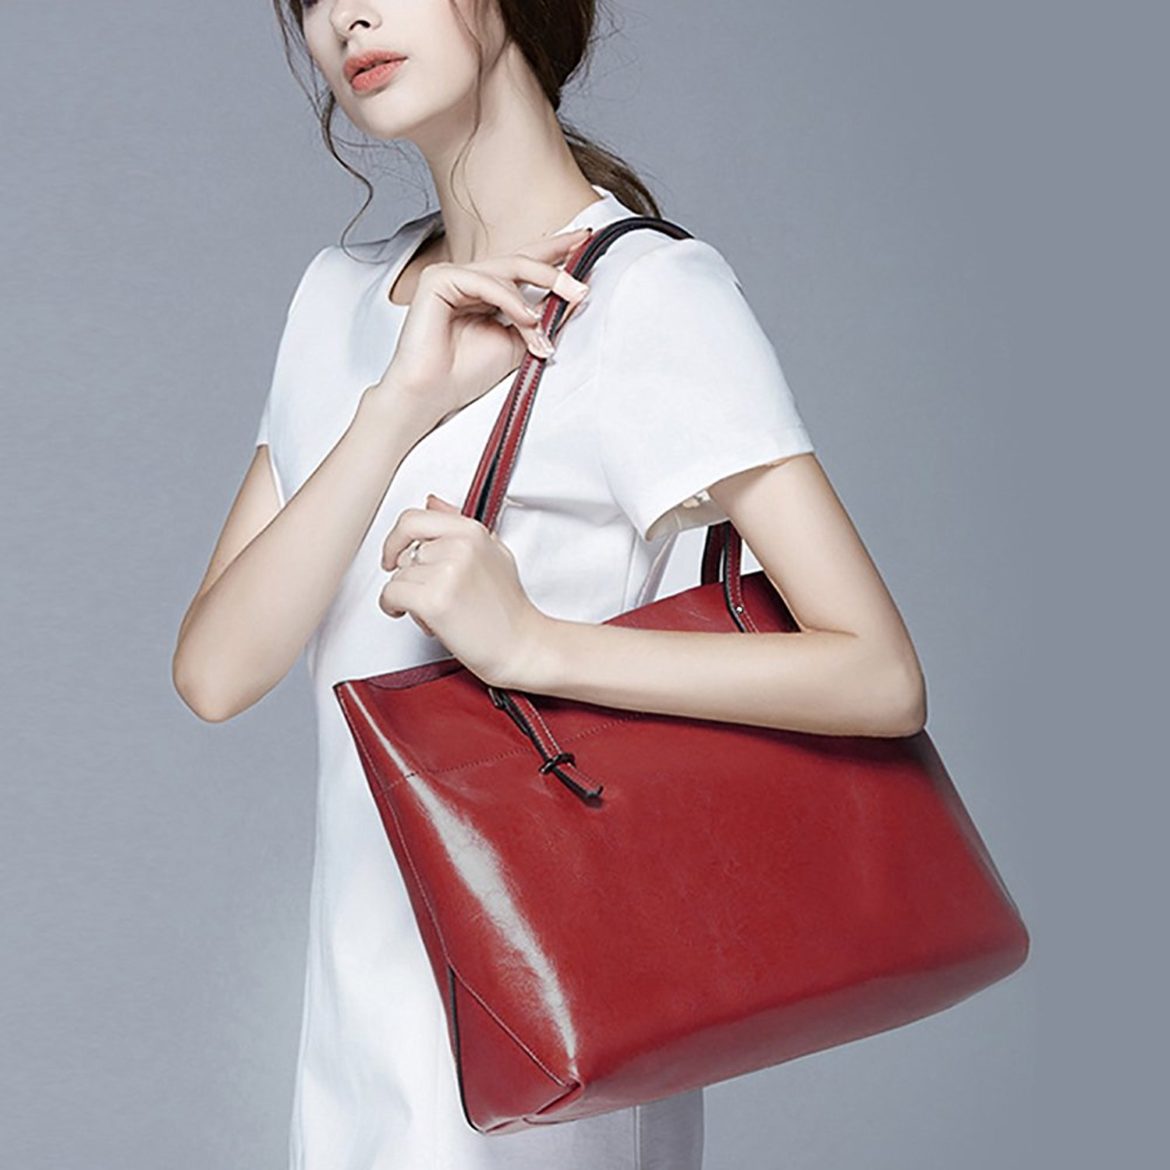 S-ZONE Women’s Vintage Genuine Leather Tote Shoulder Bag Handbag ...